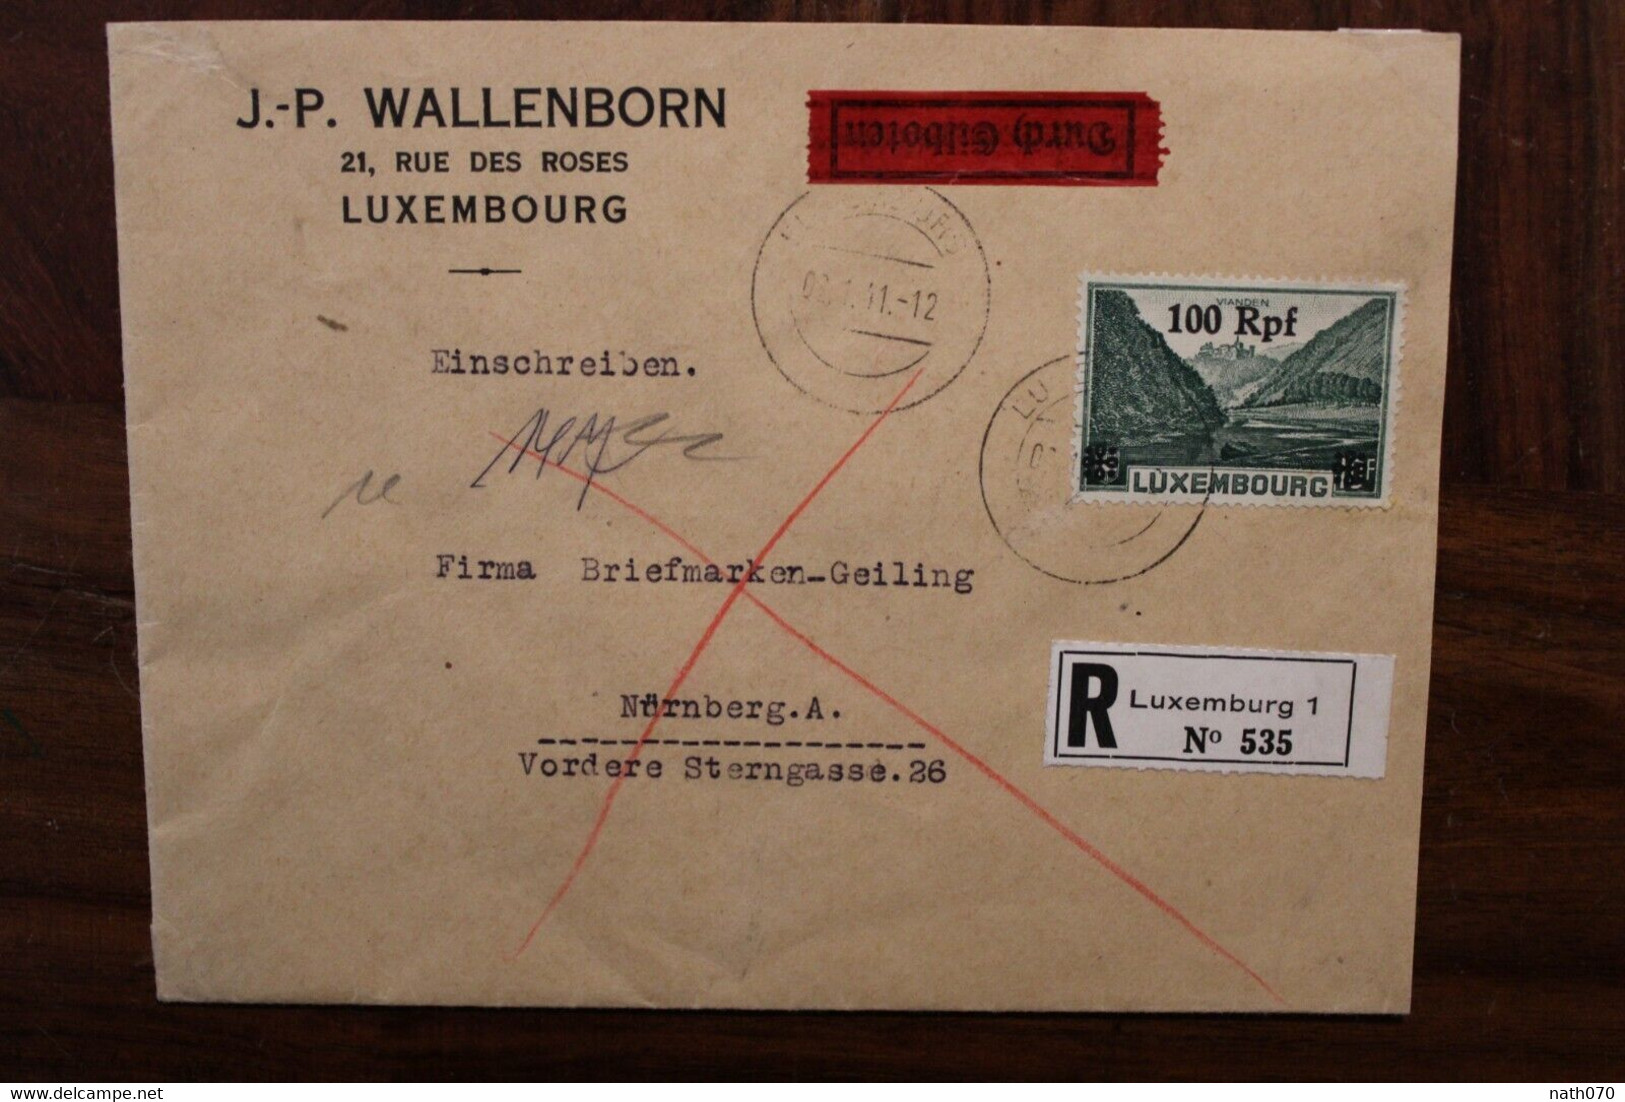 LUXEMBURG 1941 Durch Eilboten Einschreiben Cover Luxembourg Registered Recommandé Besetzung - 1940-1944 German Occupation